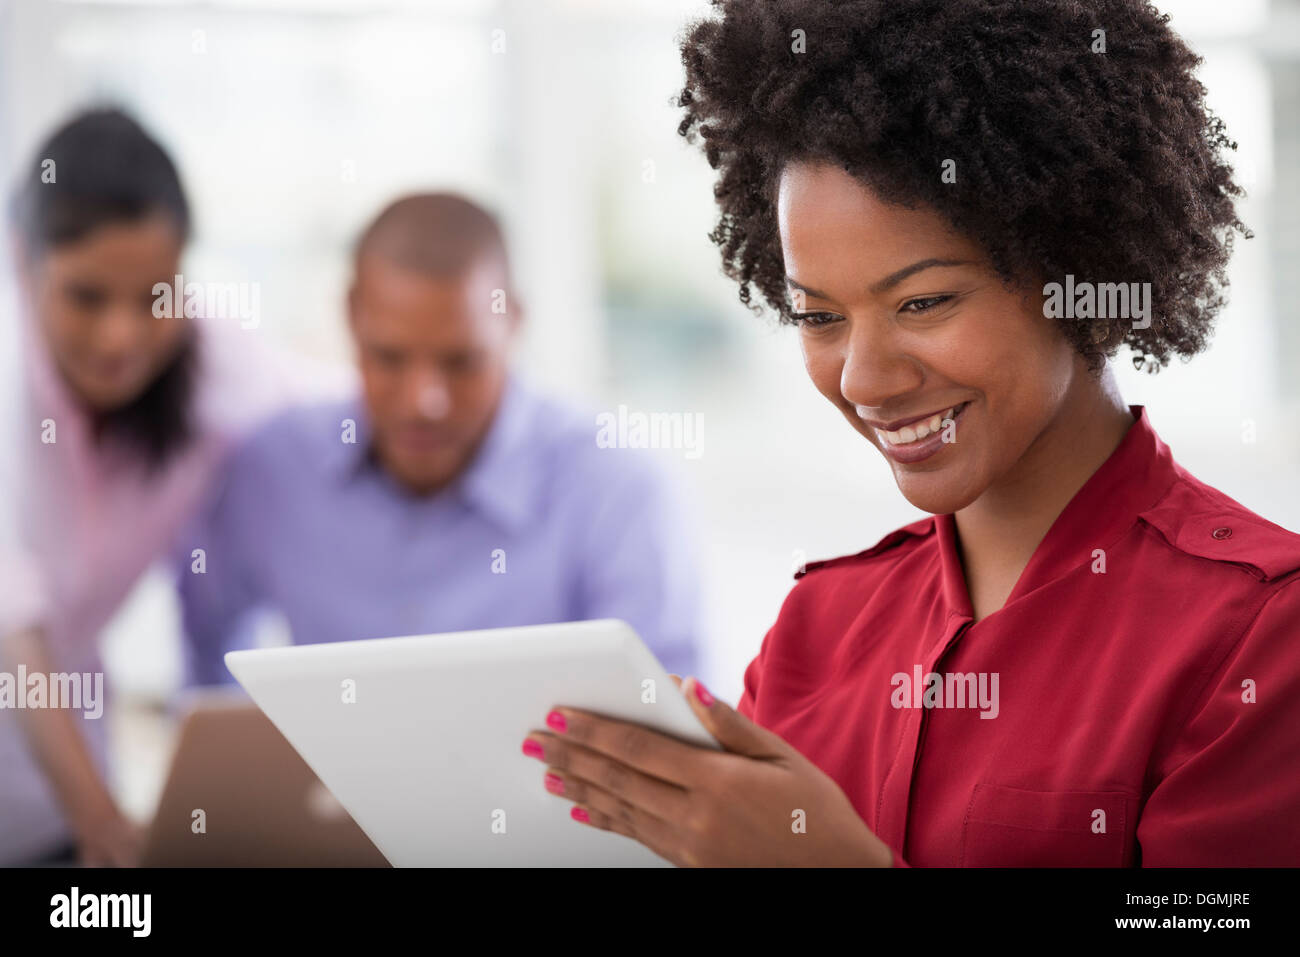 Vita in ufficio. Due persone in background e una giovane donna utilizzando una tavoletta digitale. Foto Stock